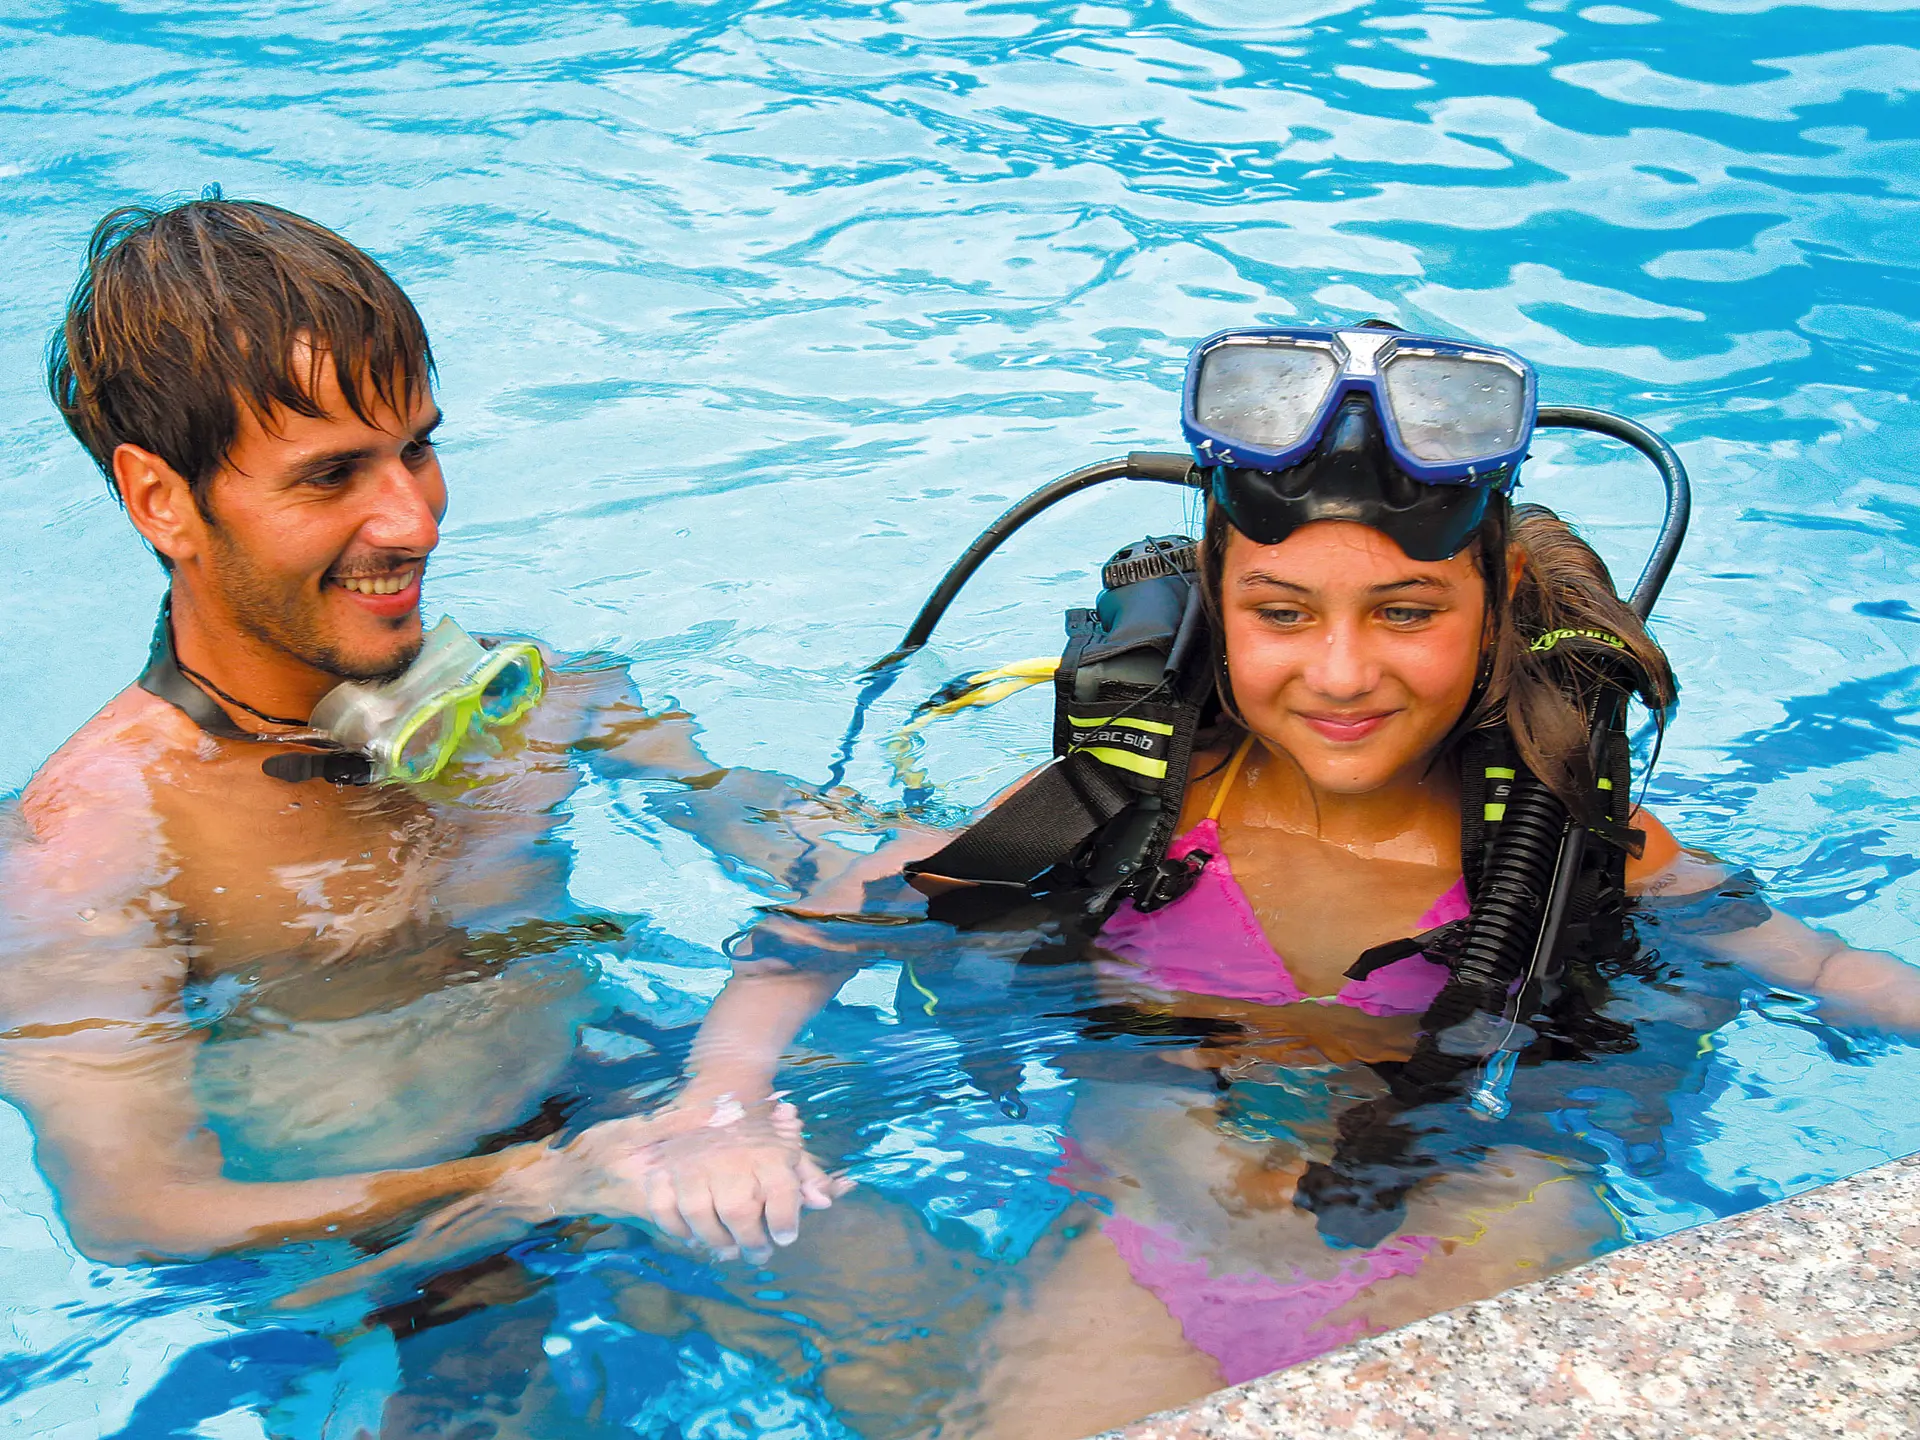 Du har muligheten til å ta et dykkerkurs på Hotel Club Saraceno